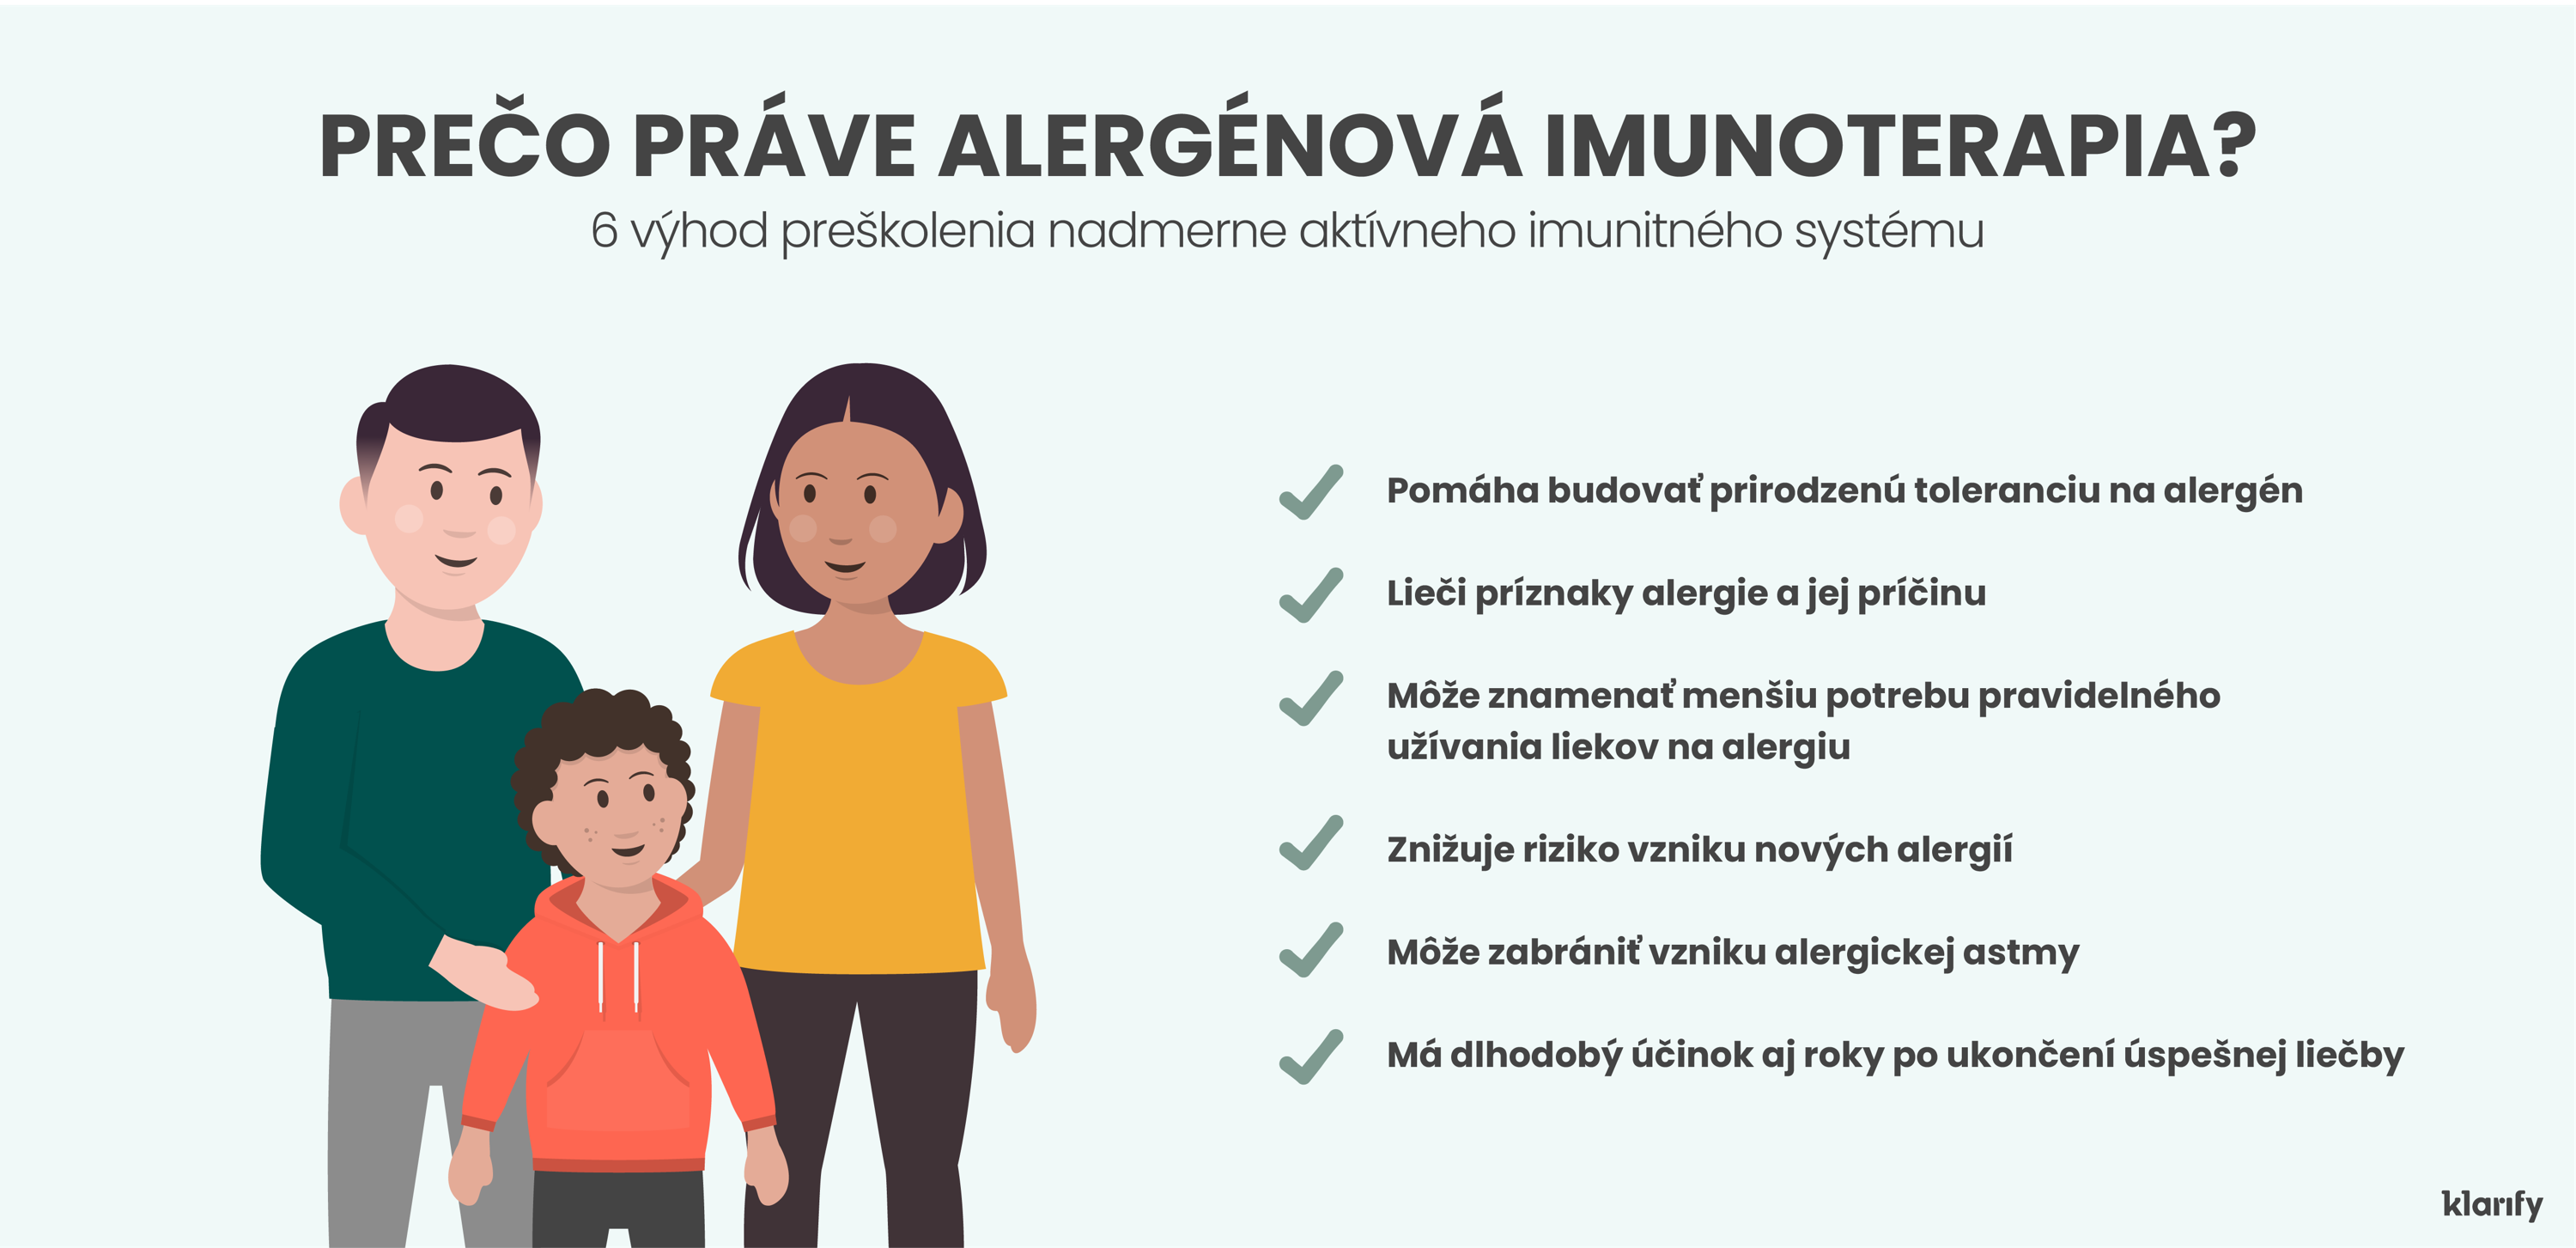 Infografika popisujúca alergénovú imunoterapiu, liečbu na preškolenie nadmerne aktívneho imunitného systému. Podrobnosti infografiky sú uvedené nižšie 